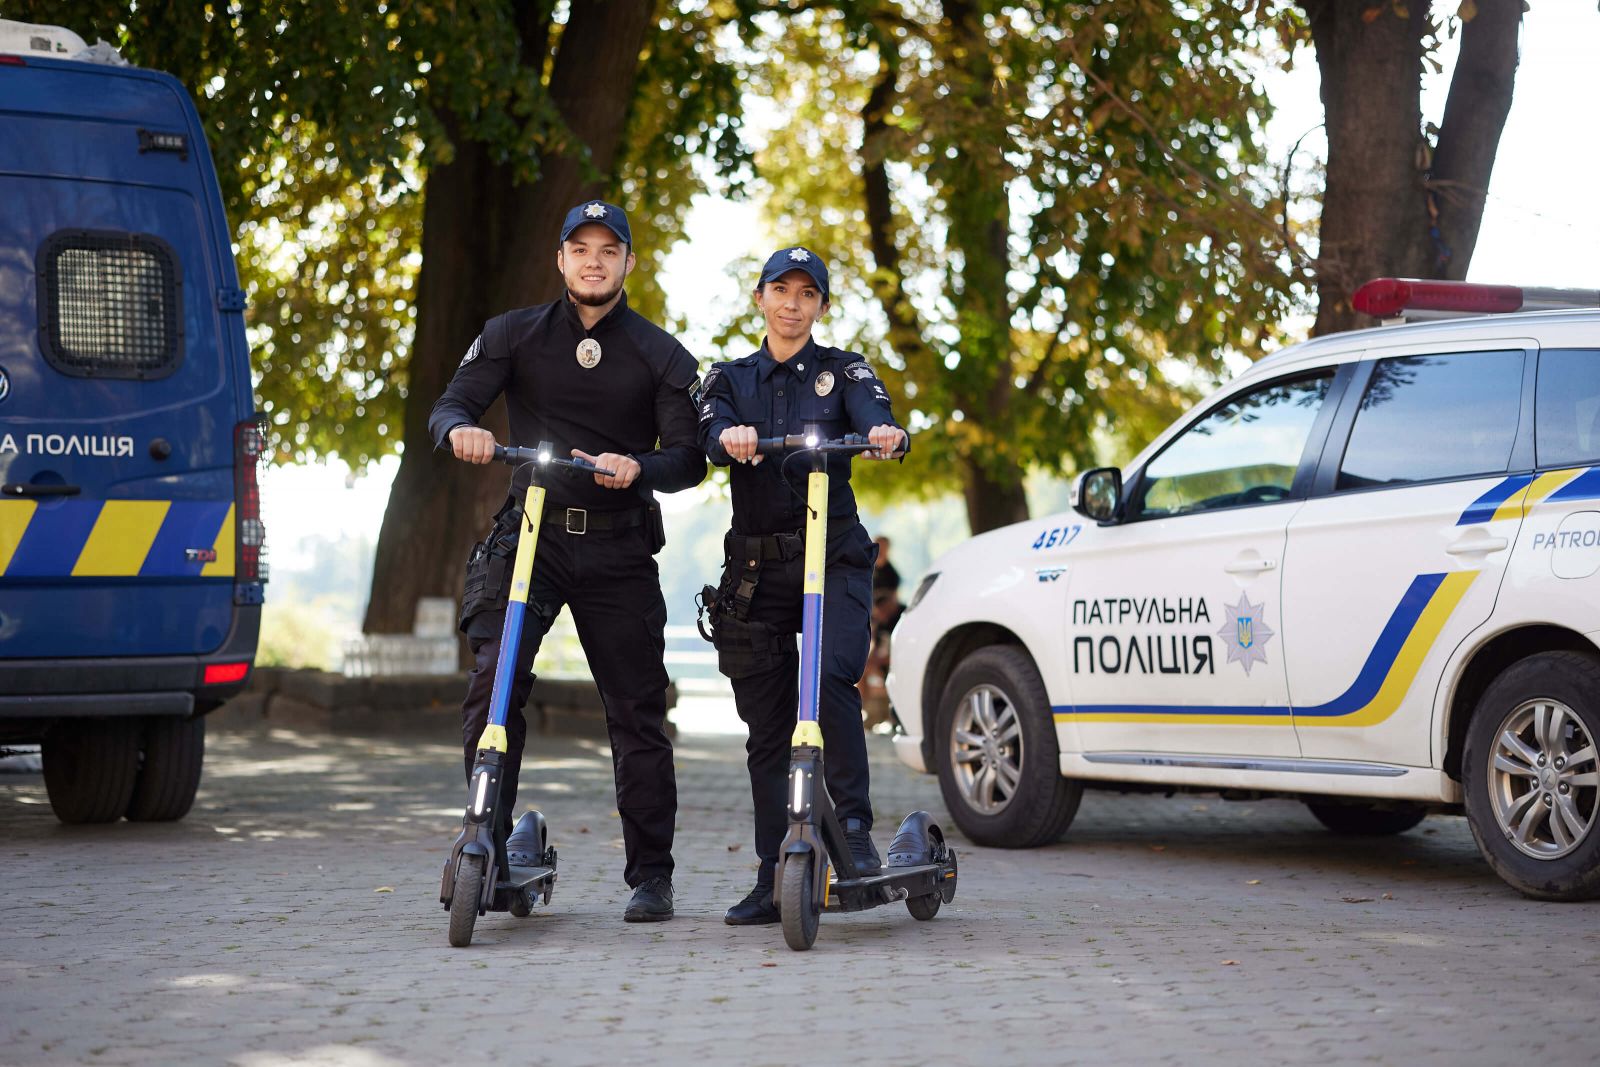 Вперше в Україні: ужгородські поліцейські отримали електросамокати для патрулювання міста (ФОТО)